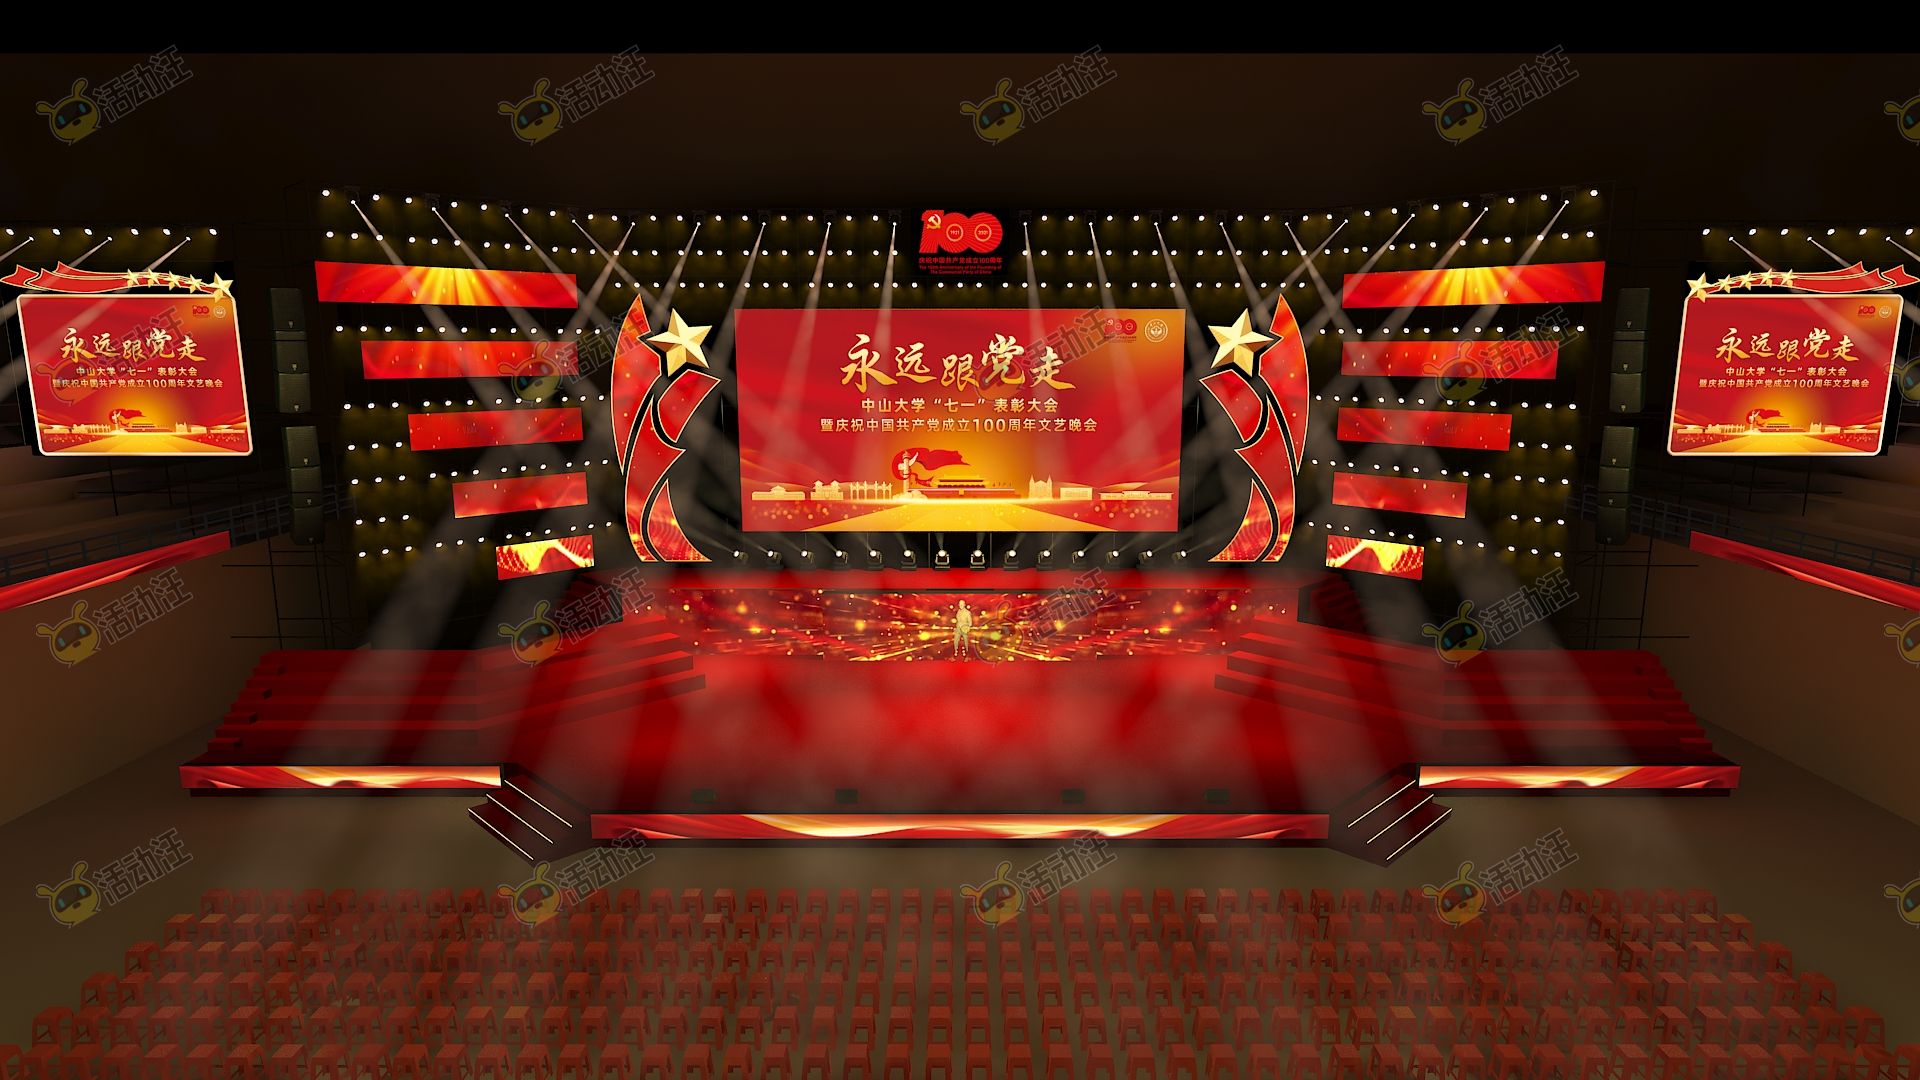 梦幻中式某高校建党100周年活动体育馆舞美庆典舞台